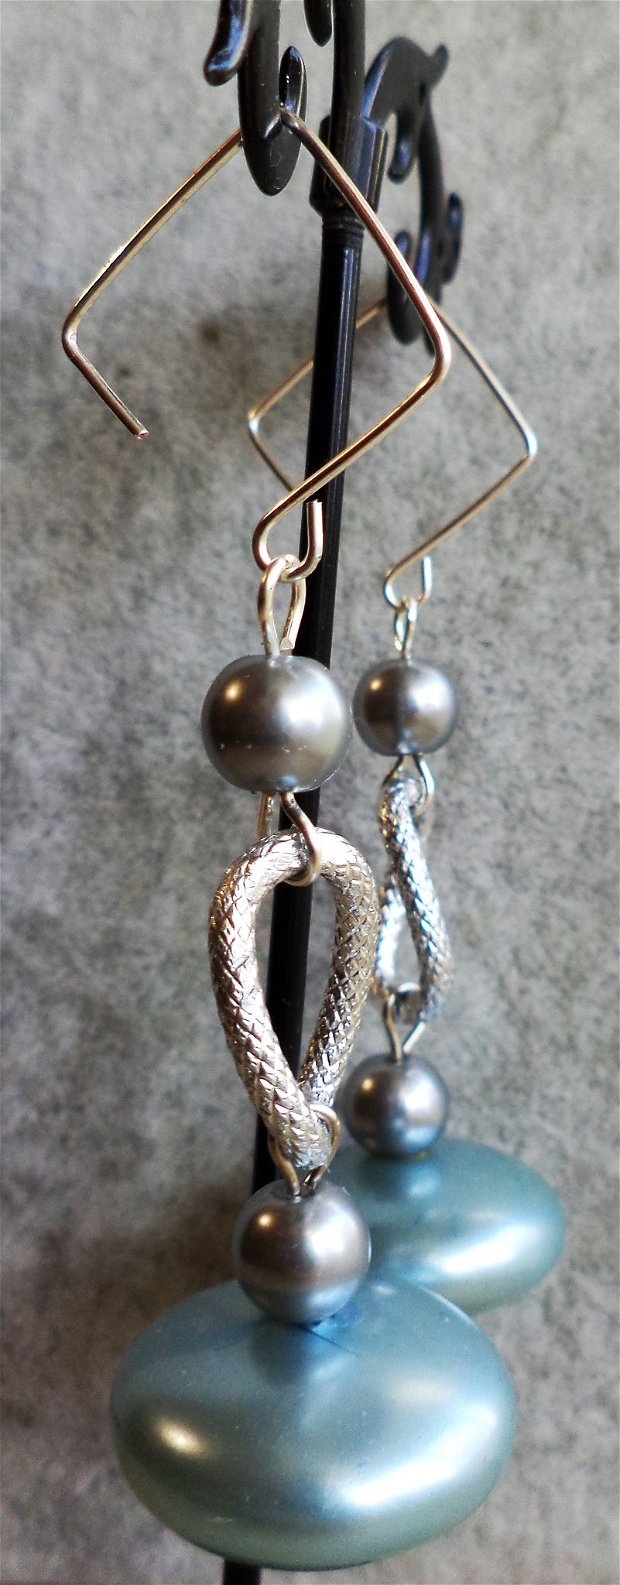 Cercei handmade cu perle din sticla